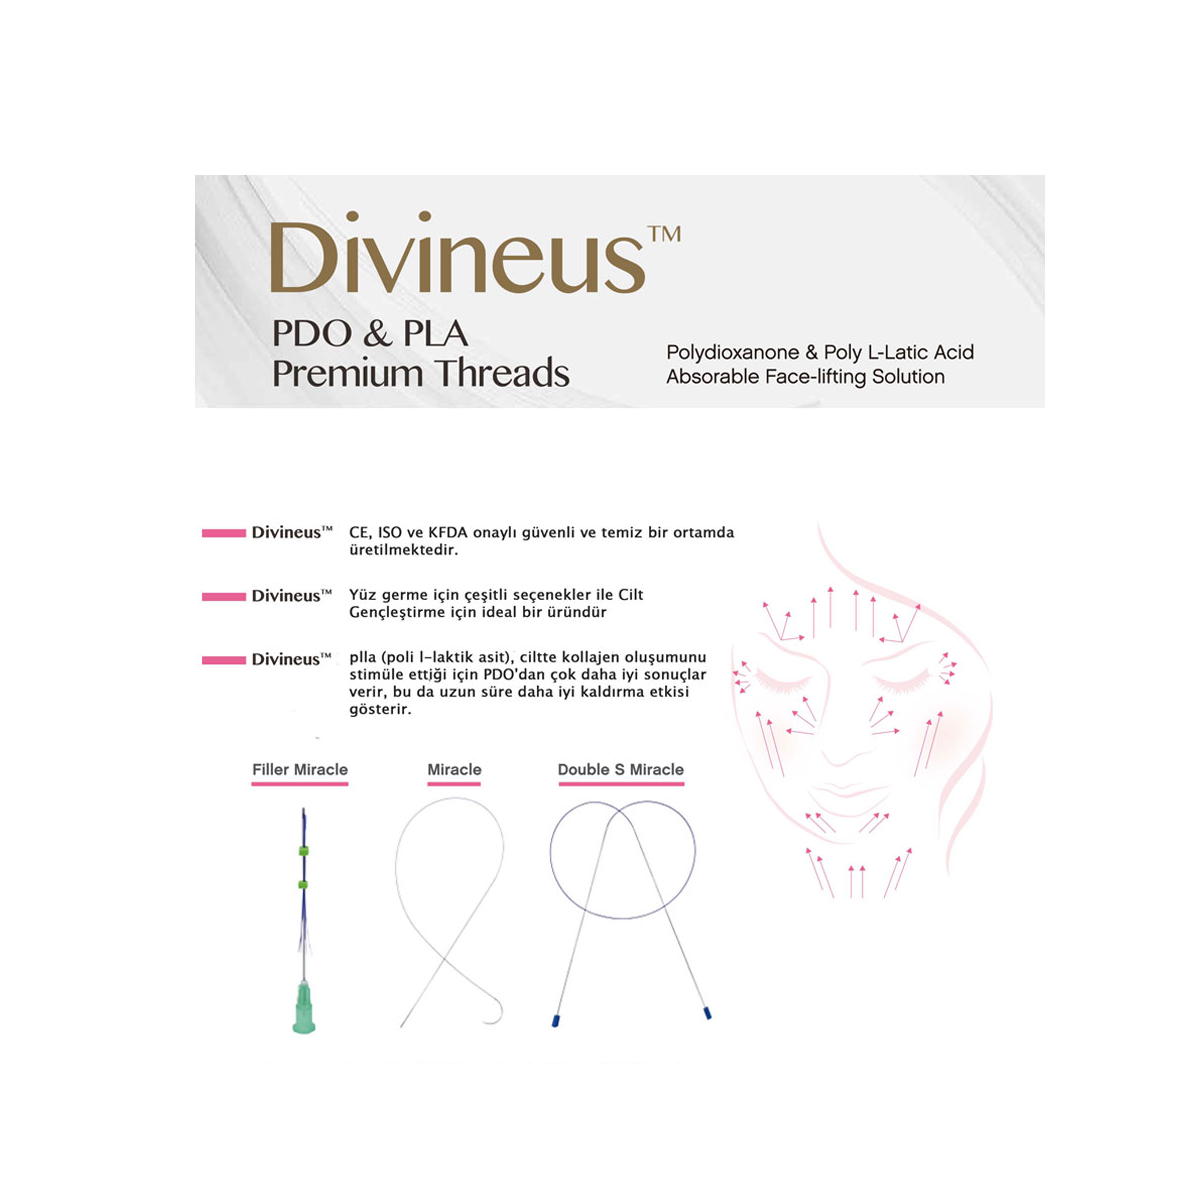 Divineus PDO & PLA Premium Threads